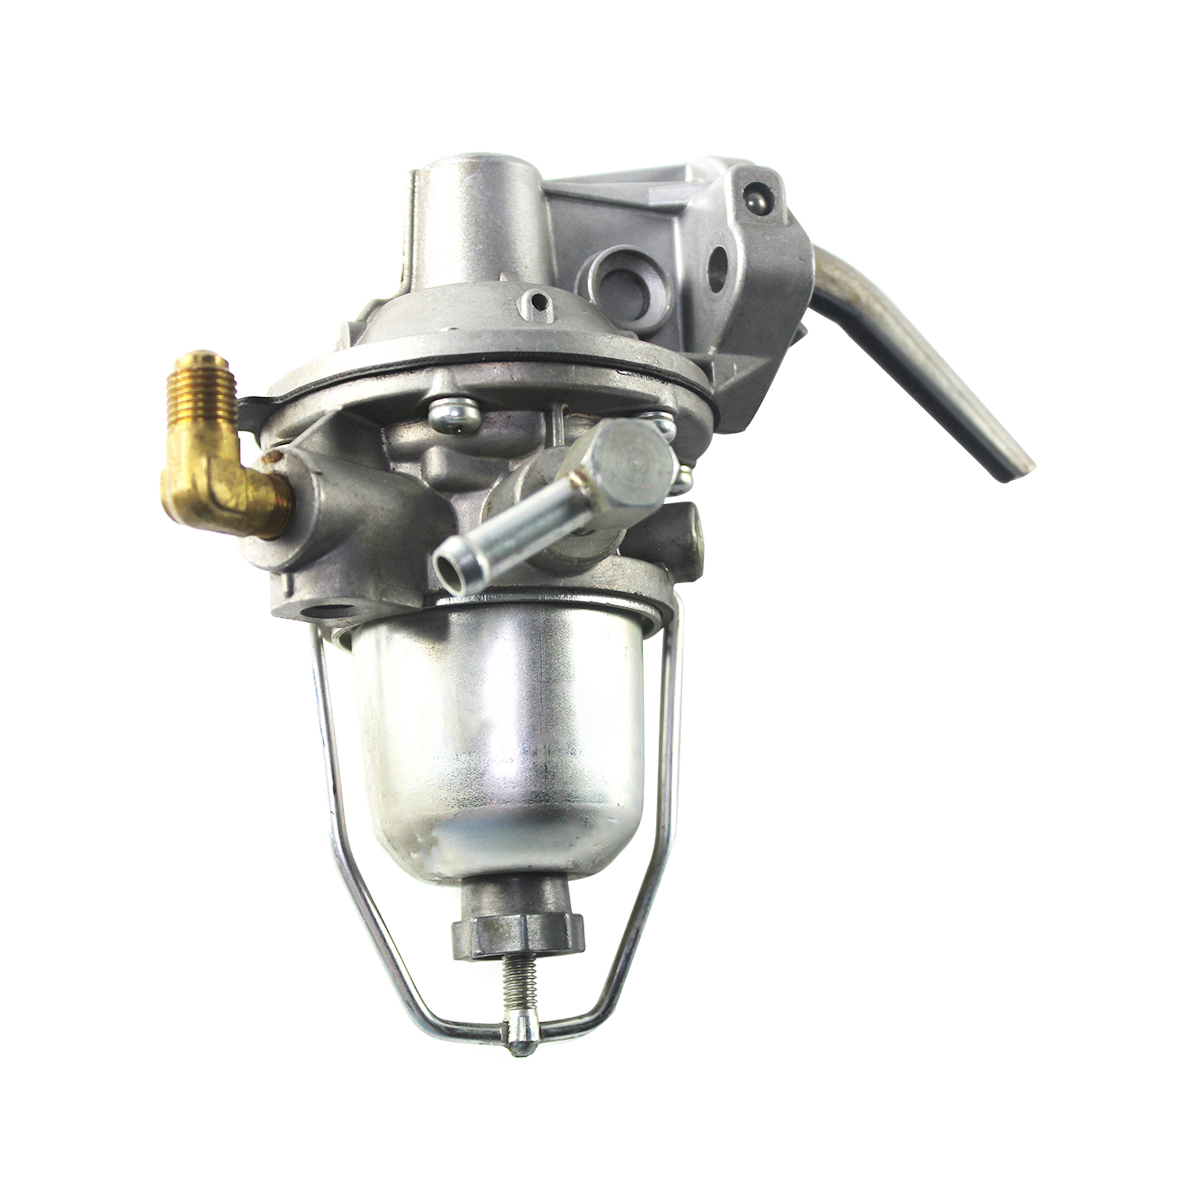 H20-2 H25-2 17010-50K00 Fuel Pump for Nissan H20-2 H25-2 Engine TCM Gasoline LPG Forklift Excavator - Sinocmp